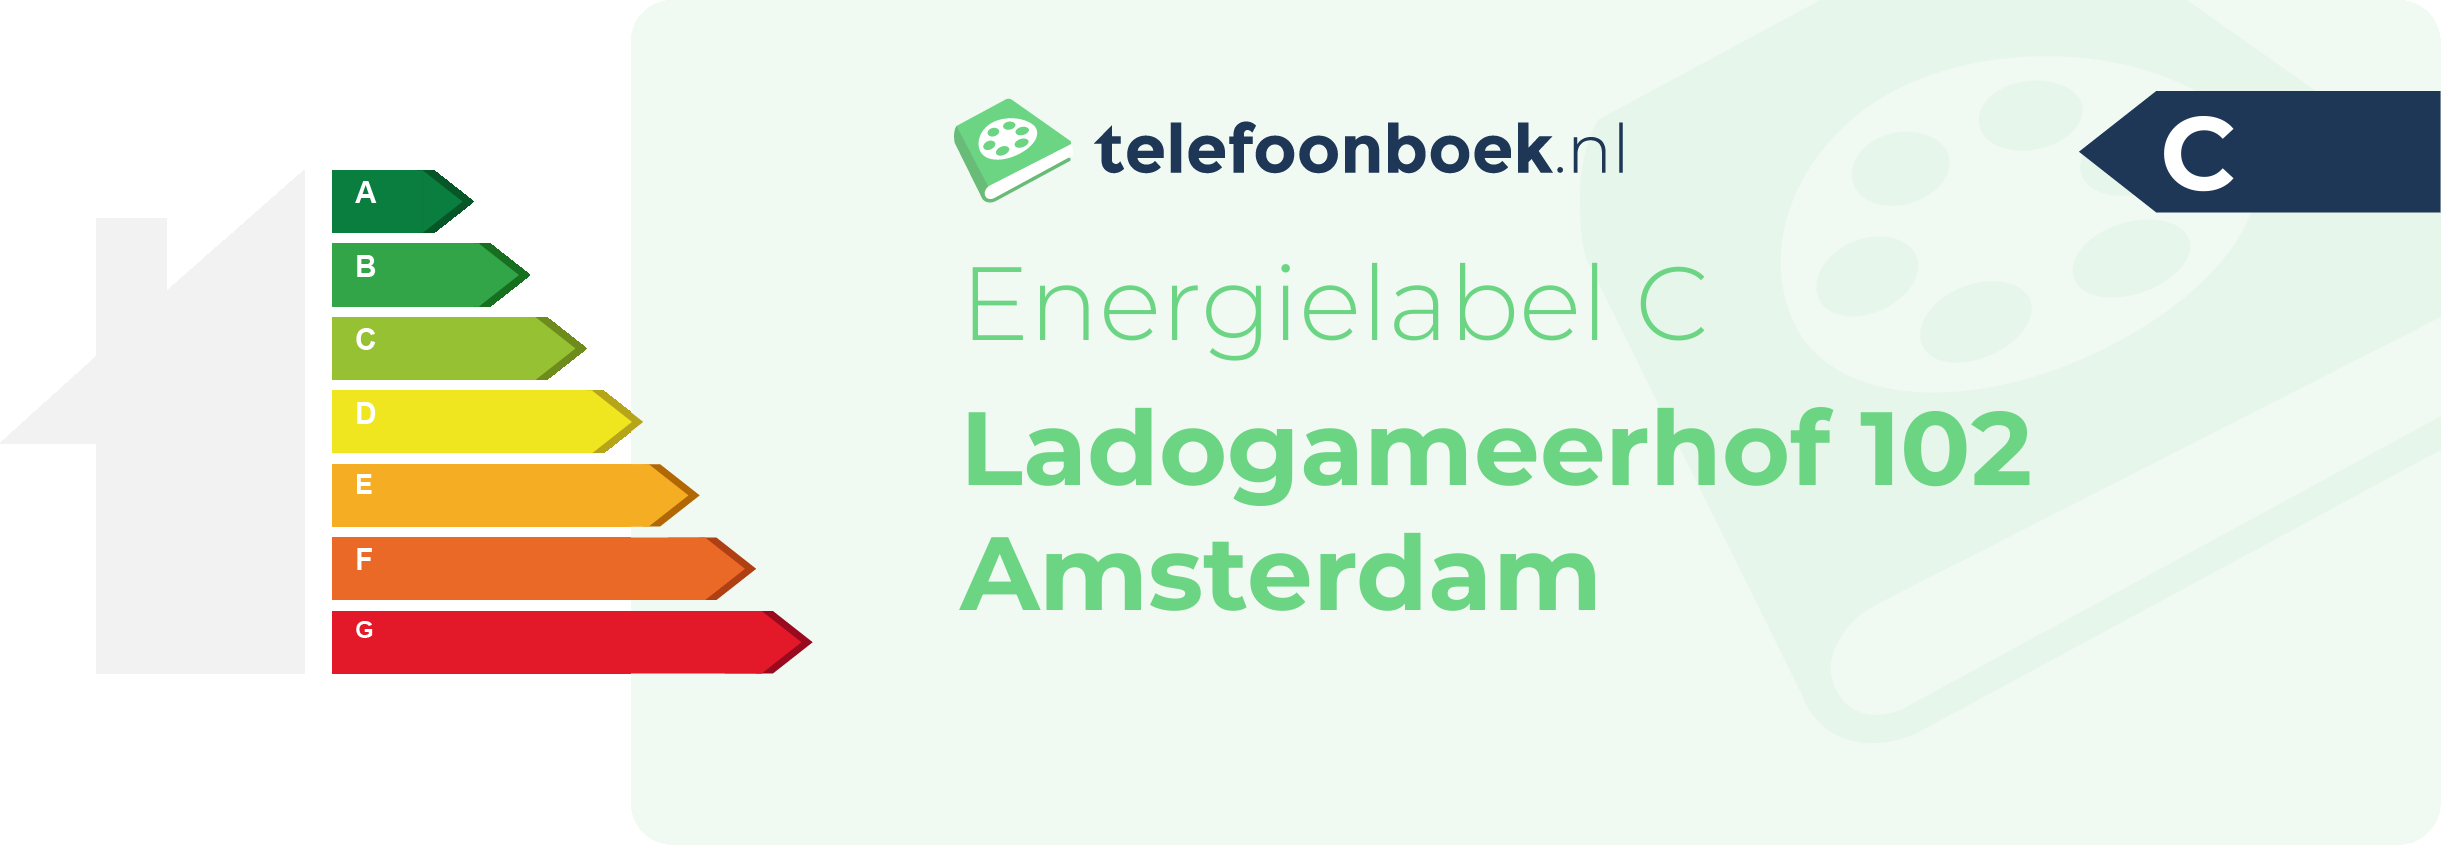 Energielabel Ladogameerhof 102 Amsterdam